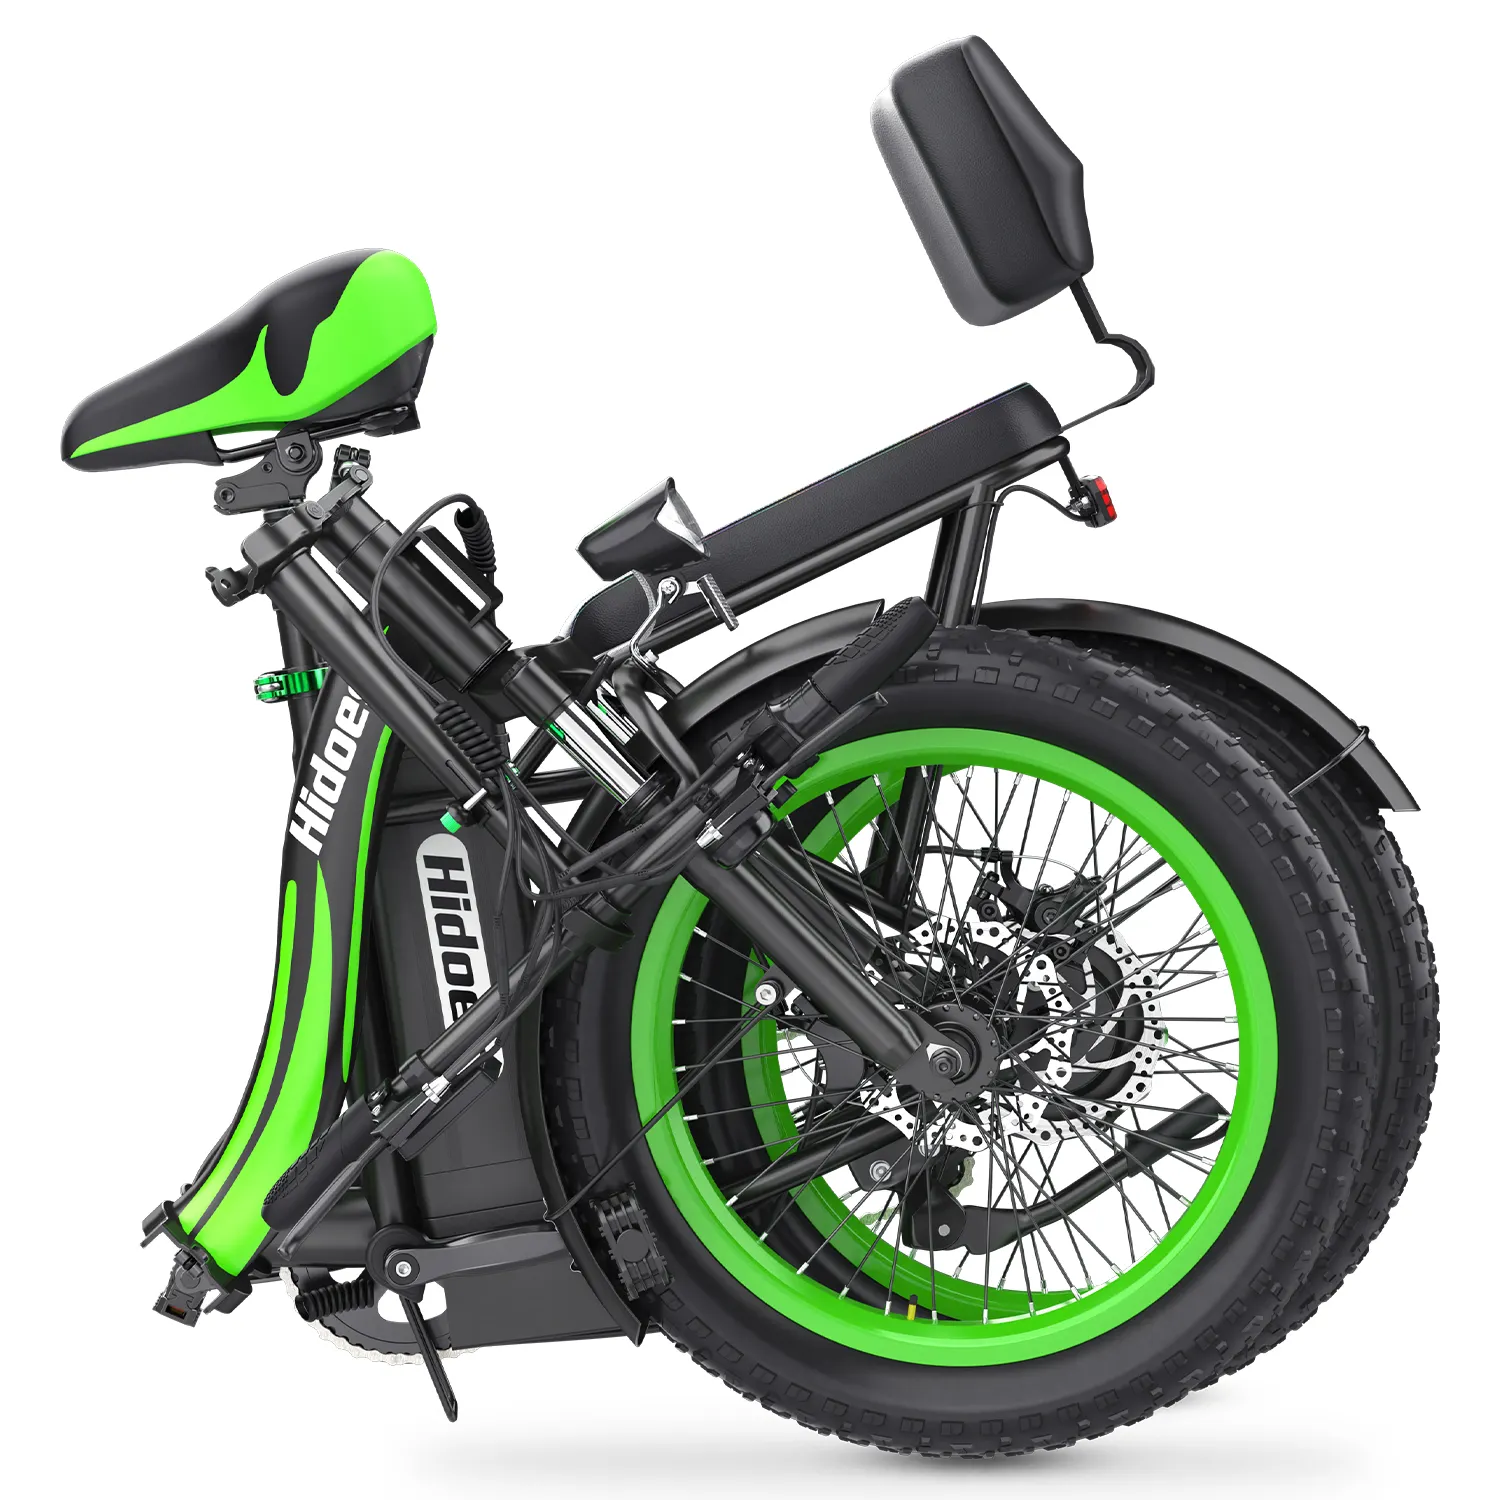 دراجة كهربائية قابلة للحمل وقابلة للطي HD-C1 دراجة كهربائية مطورة من Hidoes دراجة كهربائية 750 وات دراجة كهربائية 48 فولت دراجة المدينة الكهربائية